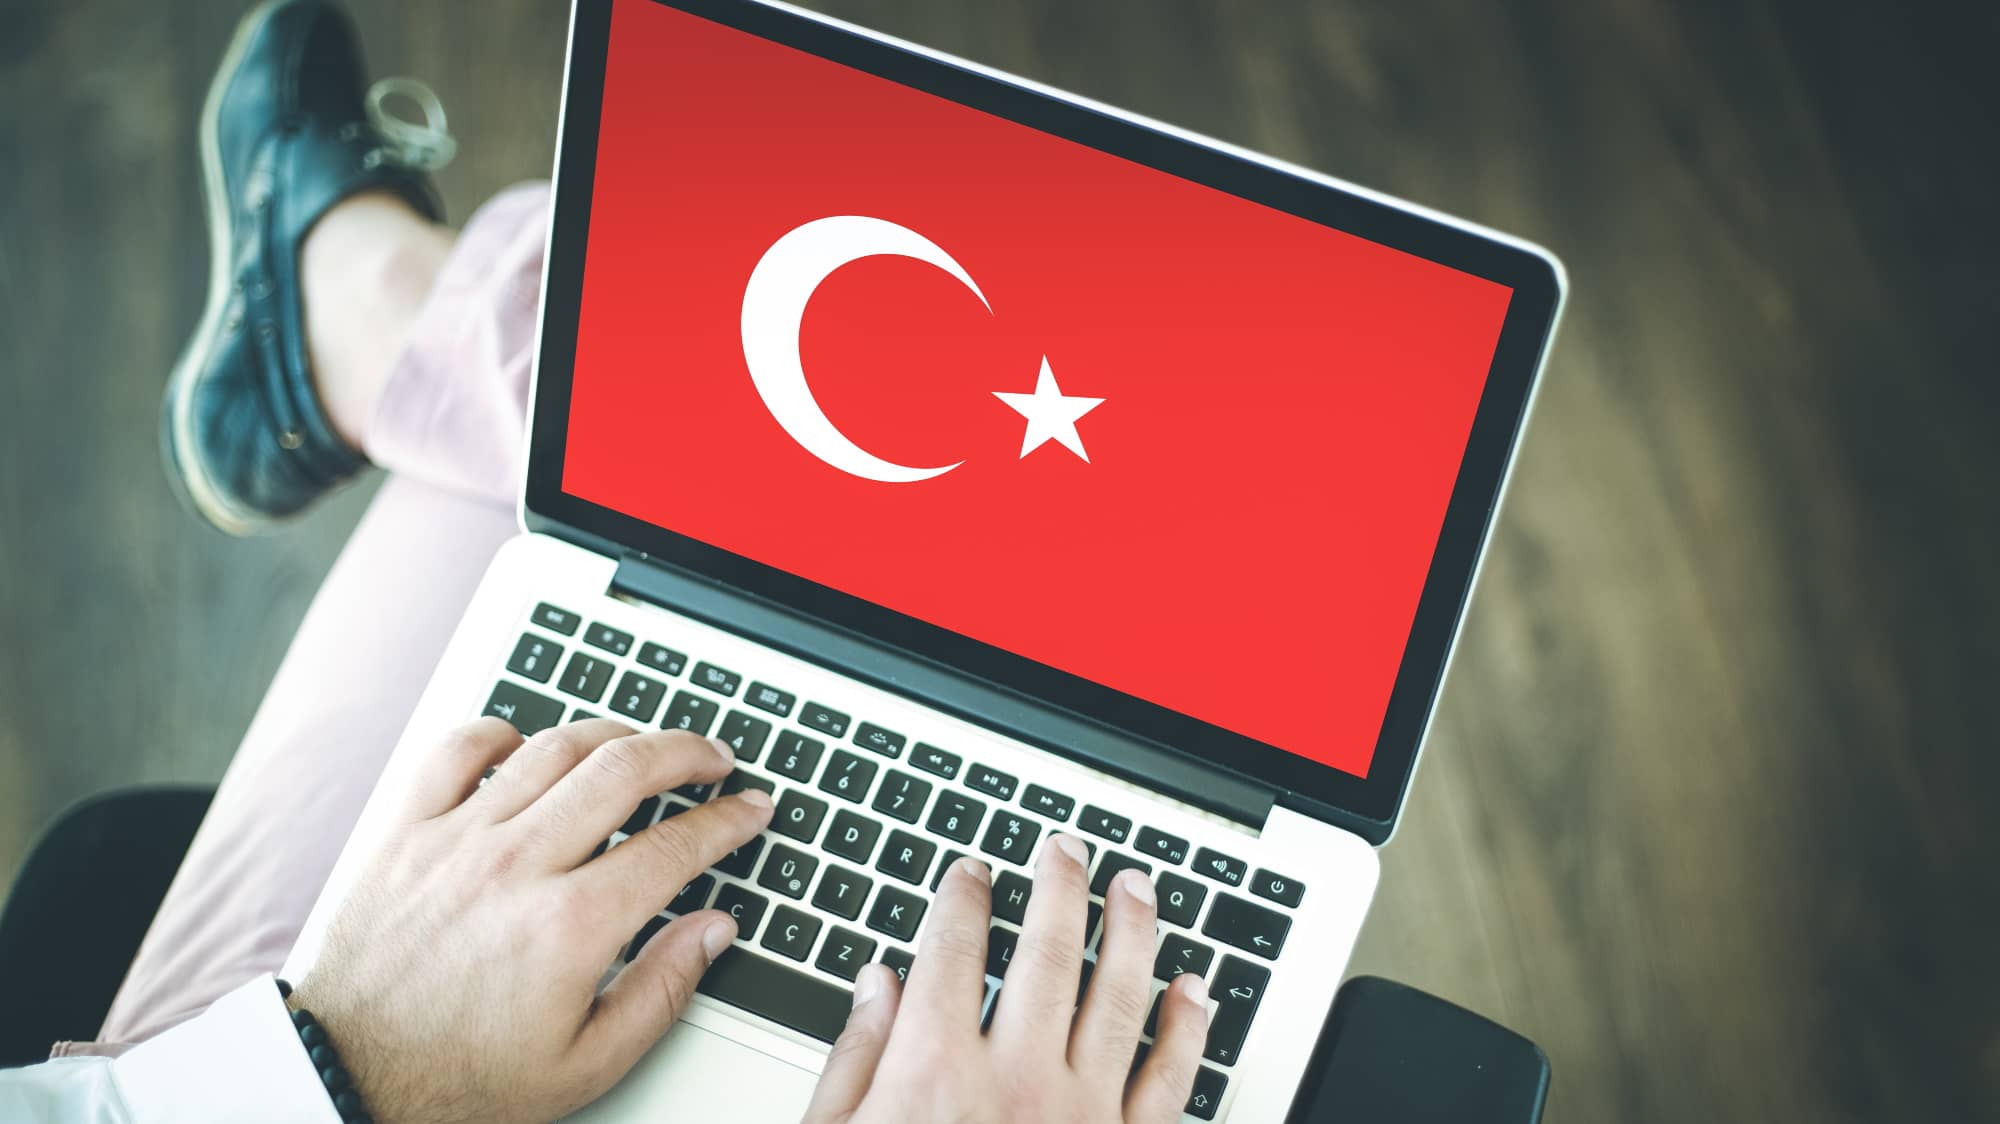 Upaya terbaru Turki untuk menyensor online telah menjadi bumerang